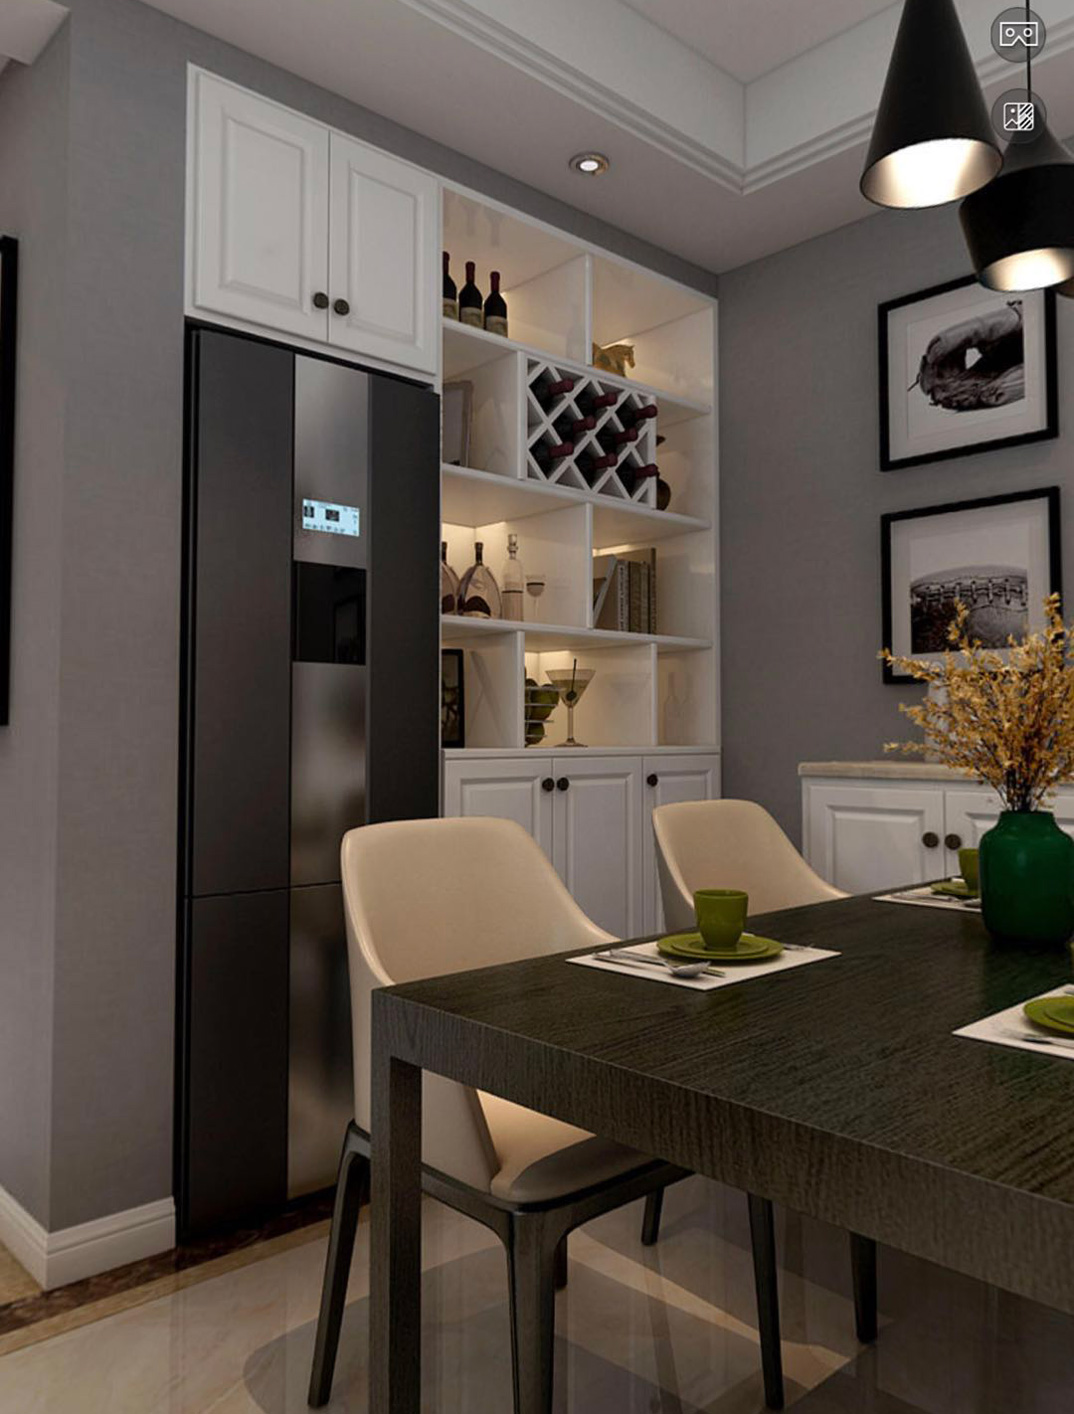 安泰名筑118㎡三室两厅客厅餐视现代风格装修案例效果图-详细.jpg